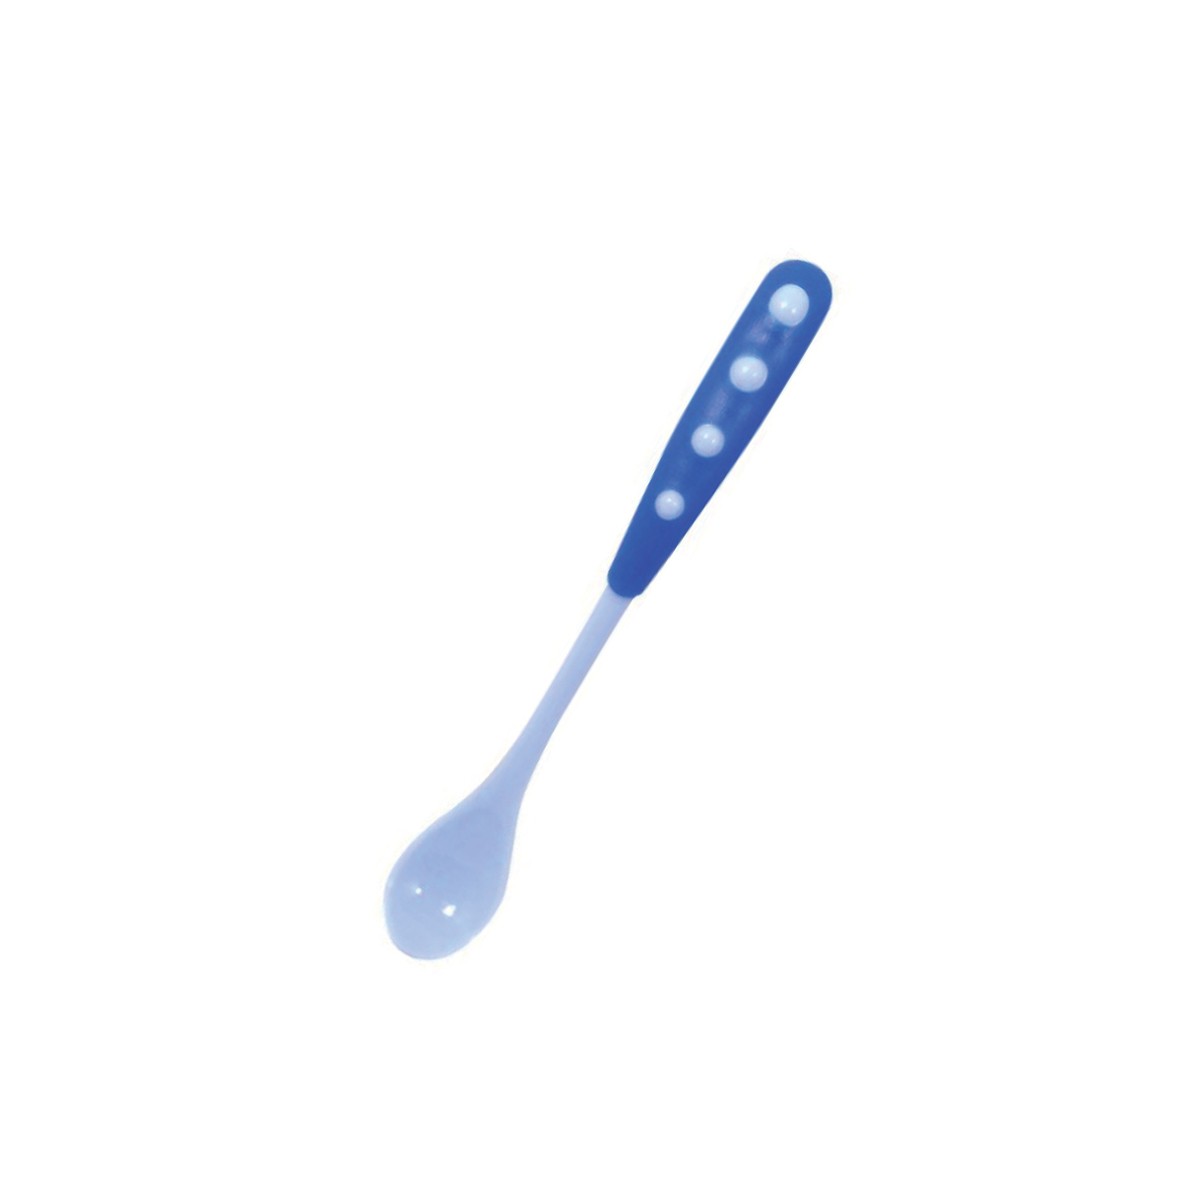 Colher para bebê com bolinhas no cabo azul-7166-20376